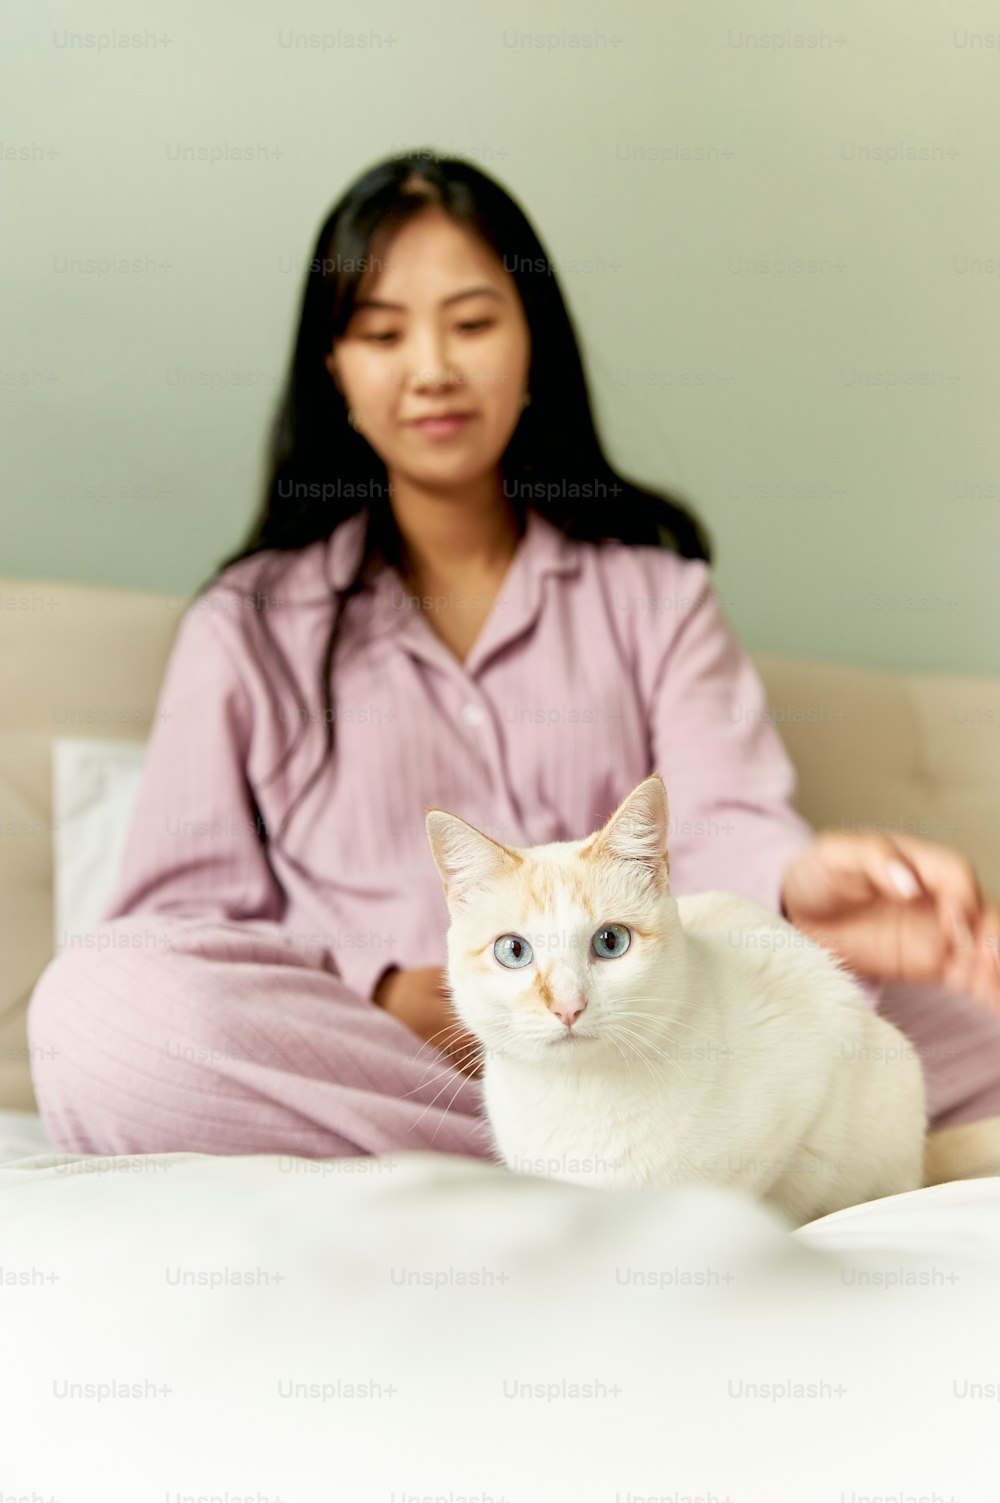 하얀 고양이와 함께 침대에 앉아 있는 여자